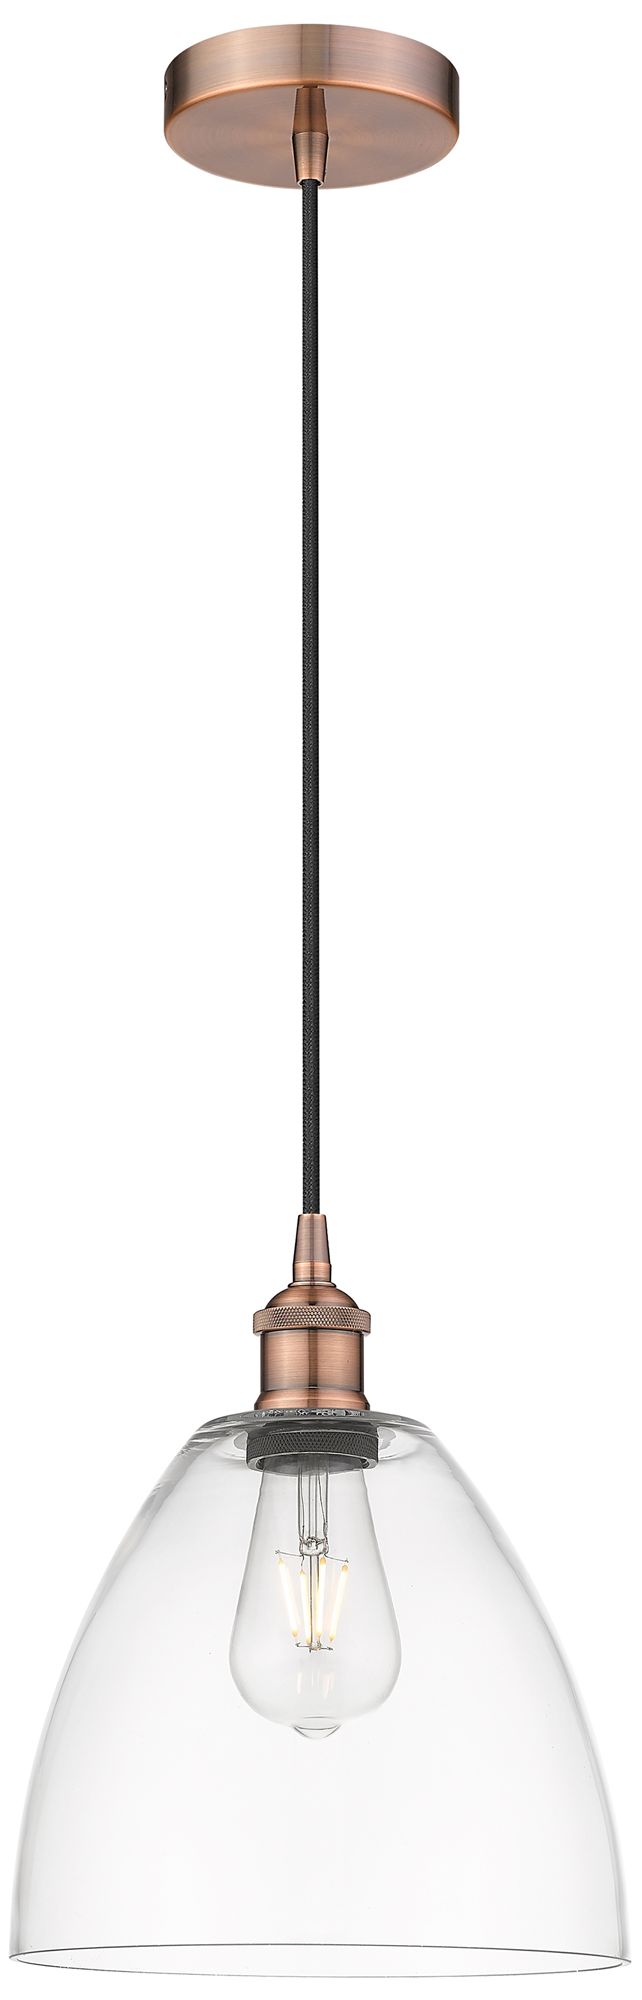 Edison Dome 9" Antique Copper Cord Hung Mini Pendant w/ Clear Shade